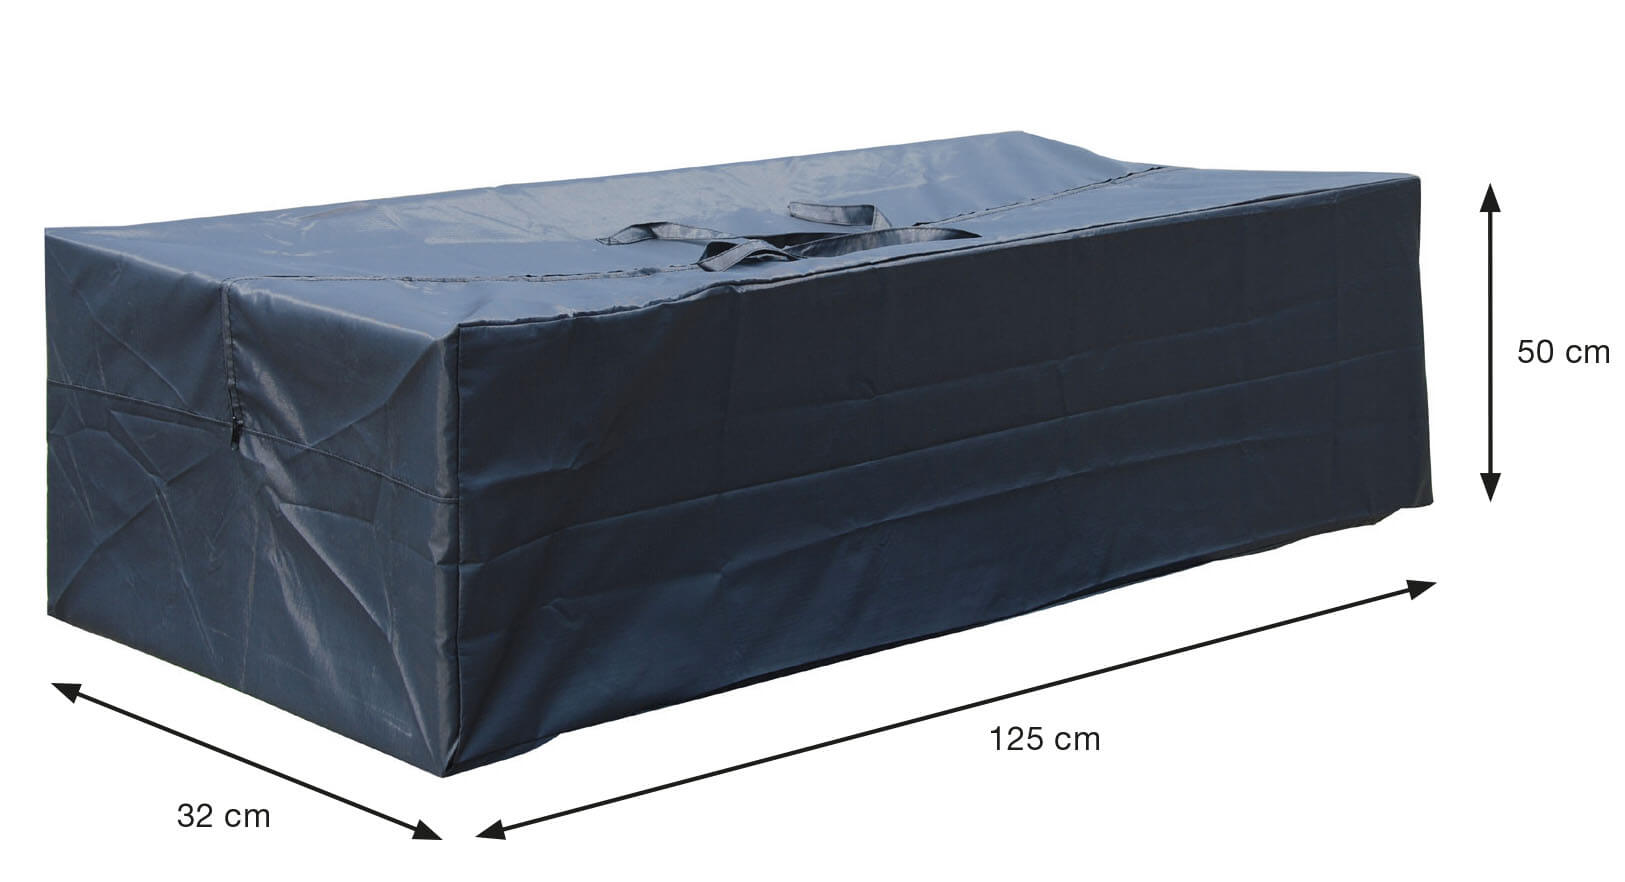 Cushionbag 125 x 50 H: 32 cm